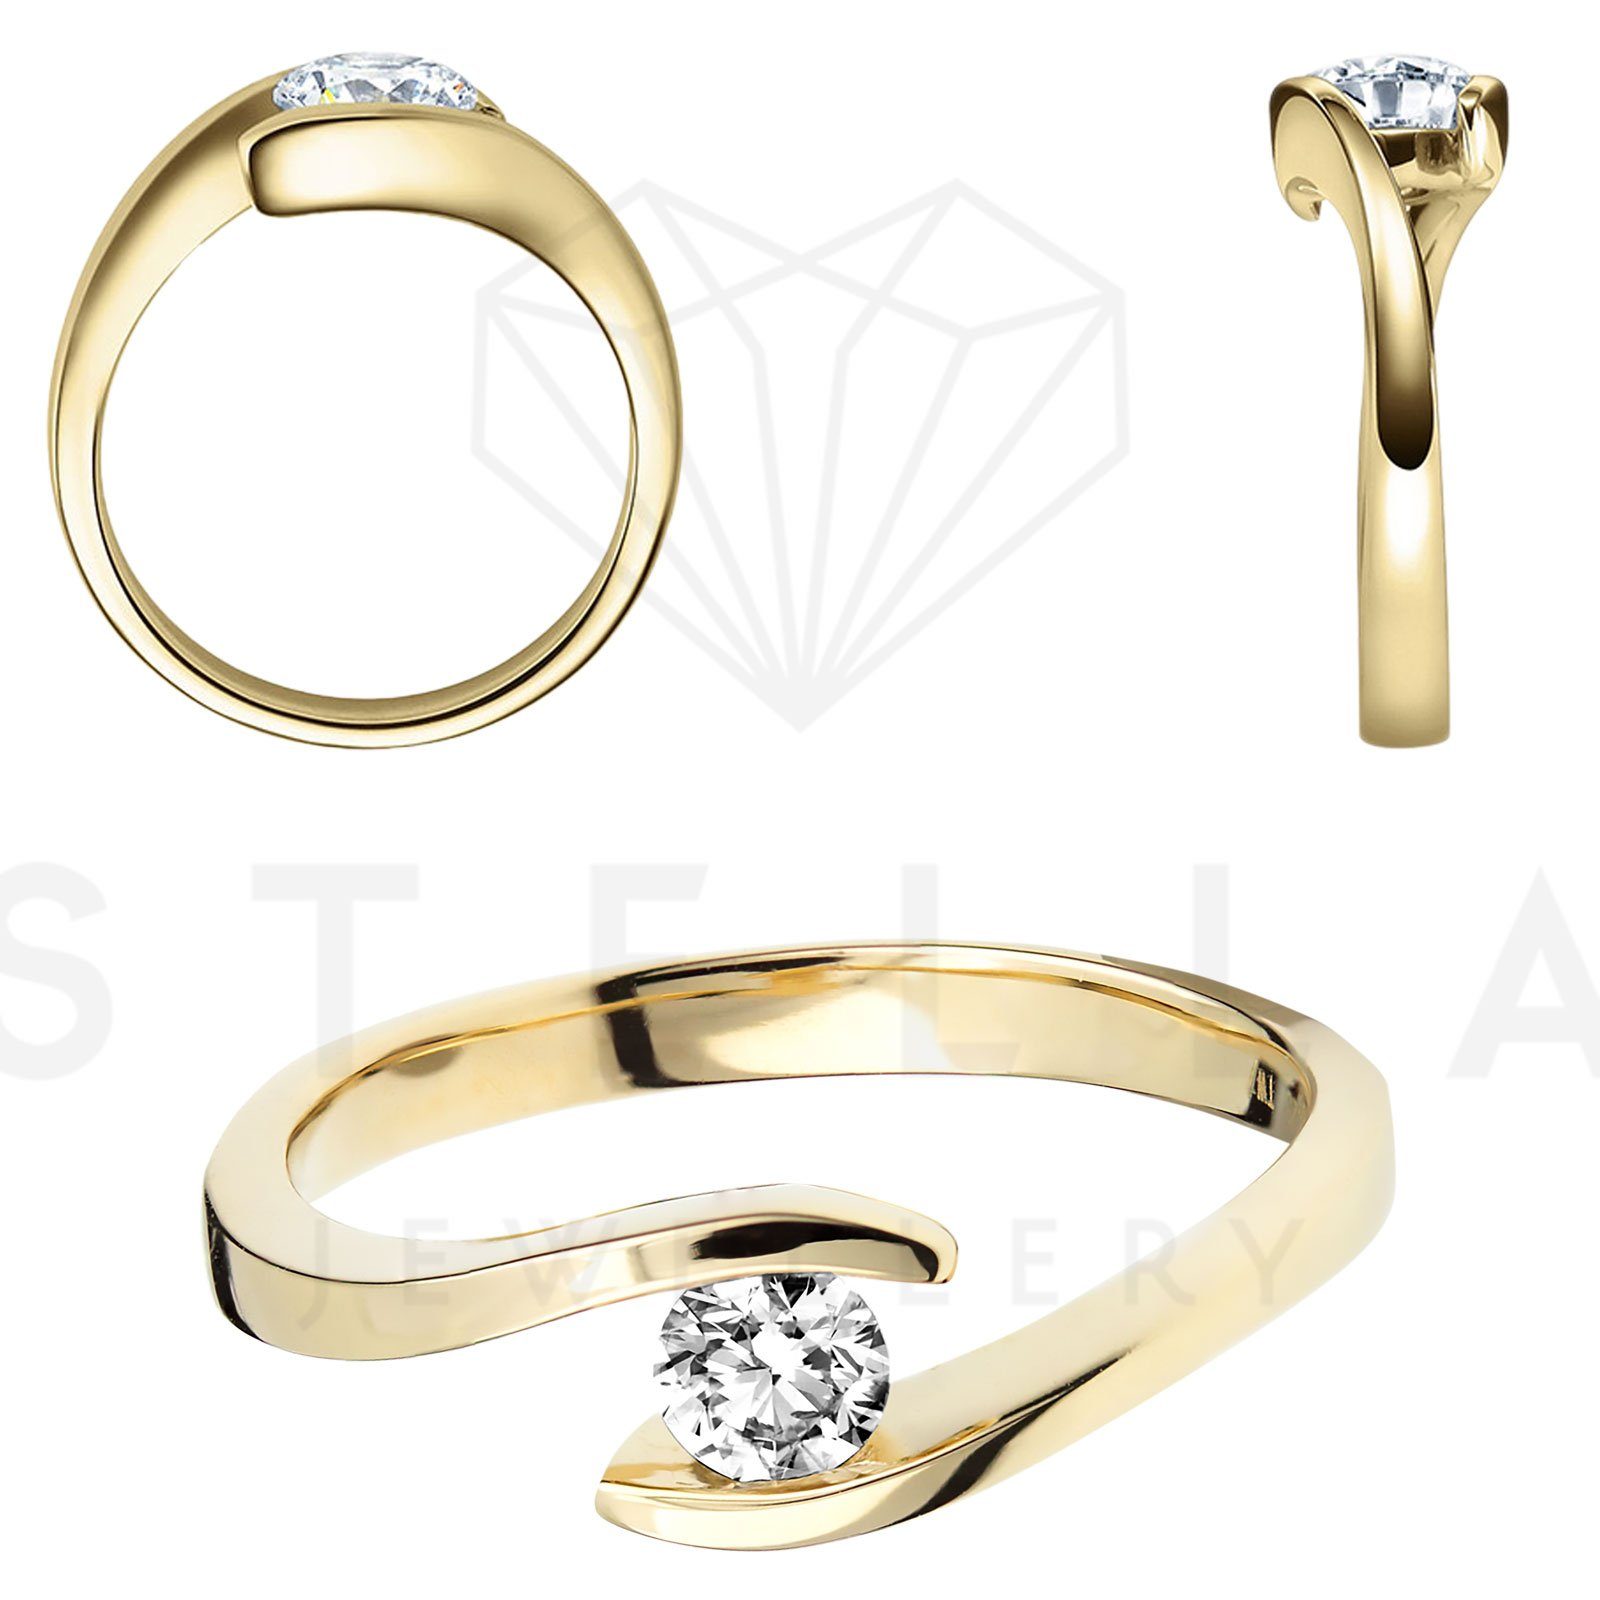 Herren Schmuck Stella-Jewellery Verlobungsring Verlobungsring Spannring 585 Gelbgold Diamant Gr54 (inkl. Etui), mit Brillant 0,1